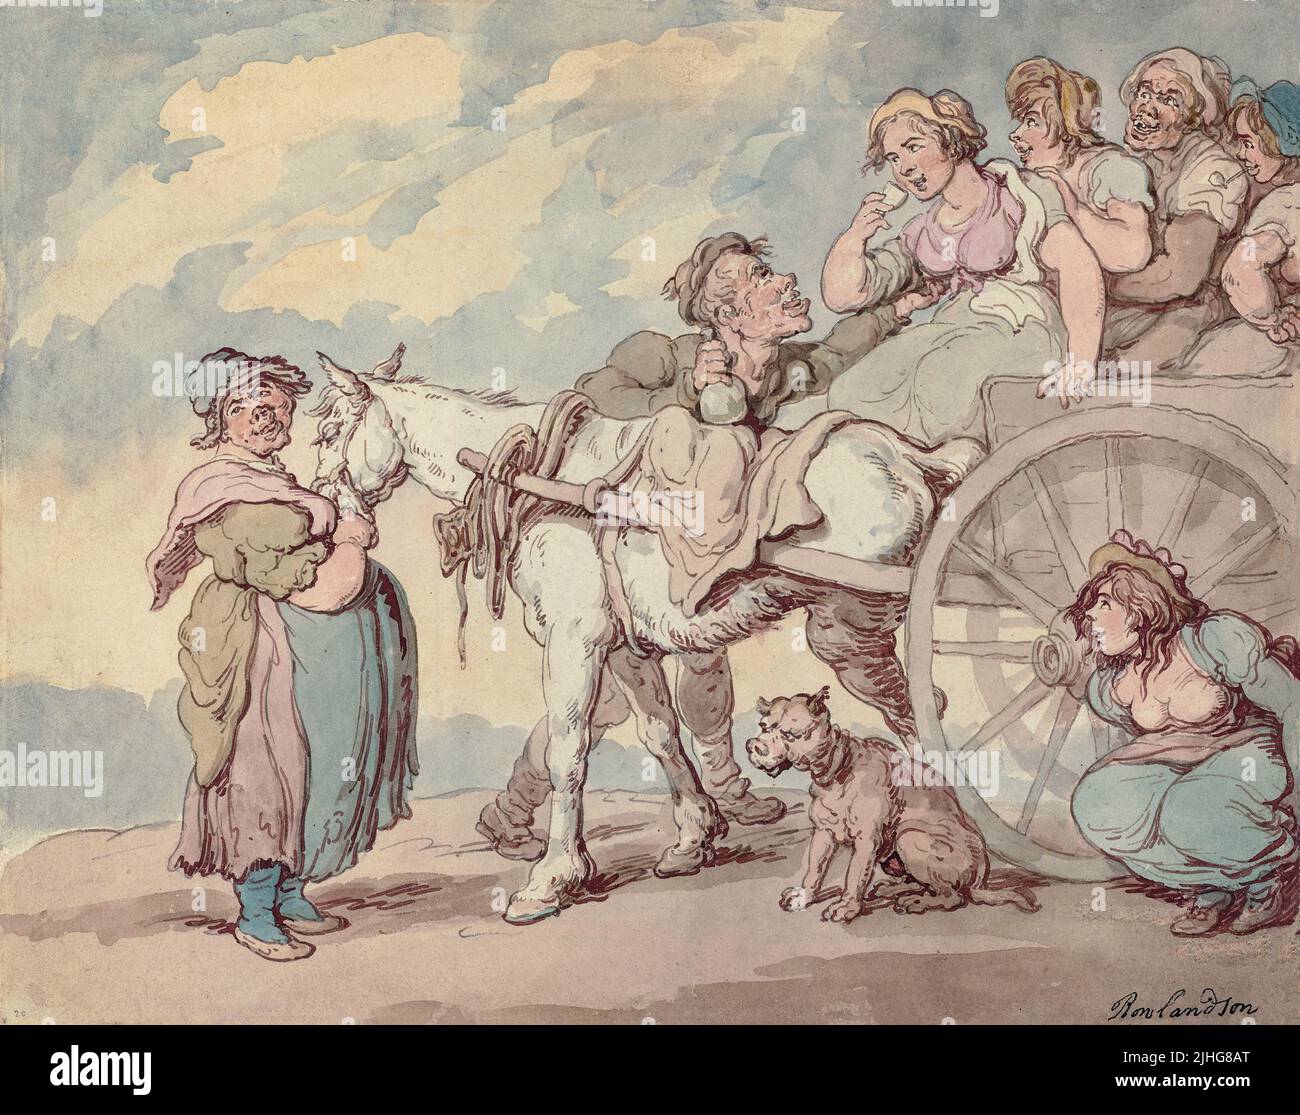 Ein irisches Picknick von Thomas Rowlandson (1757-1827), einem englischen Künstler und Karikaturisten der georgischen Ära, der für seine politische Satire und soziale Beobachtung bekannt ist. Als produktiver Künstler und Grafiker sind seine Karikaturen, wie andere Karikaturisten seines Alters, oft robust oder schroffig. Stockfoto